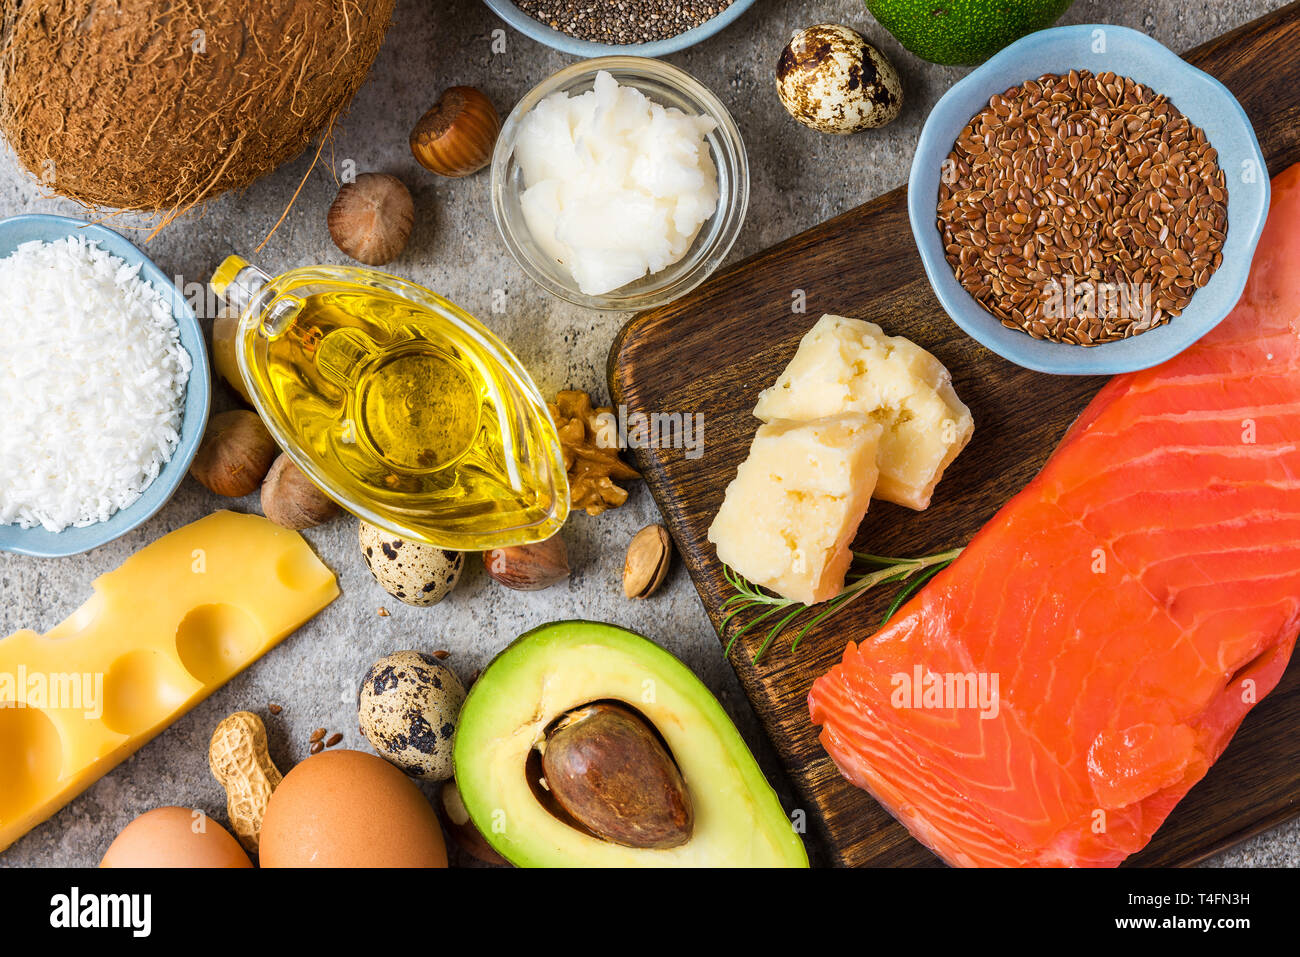 Selezione di buoni e grassi omega 3 fonti. il mangiare sano concetto. Dieta Ketogenic. vista superiore Foto Stock